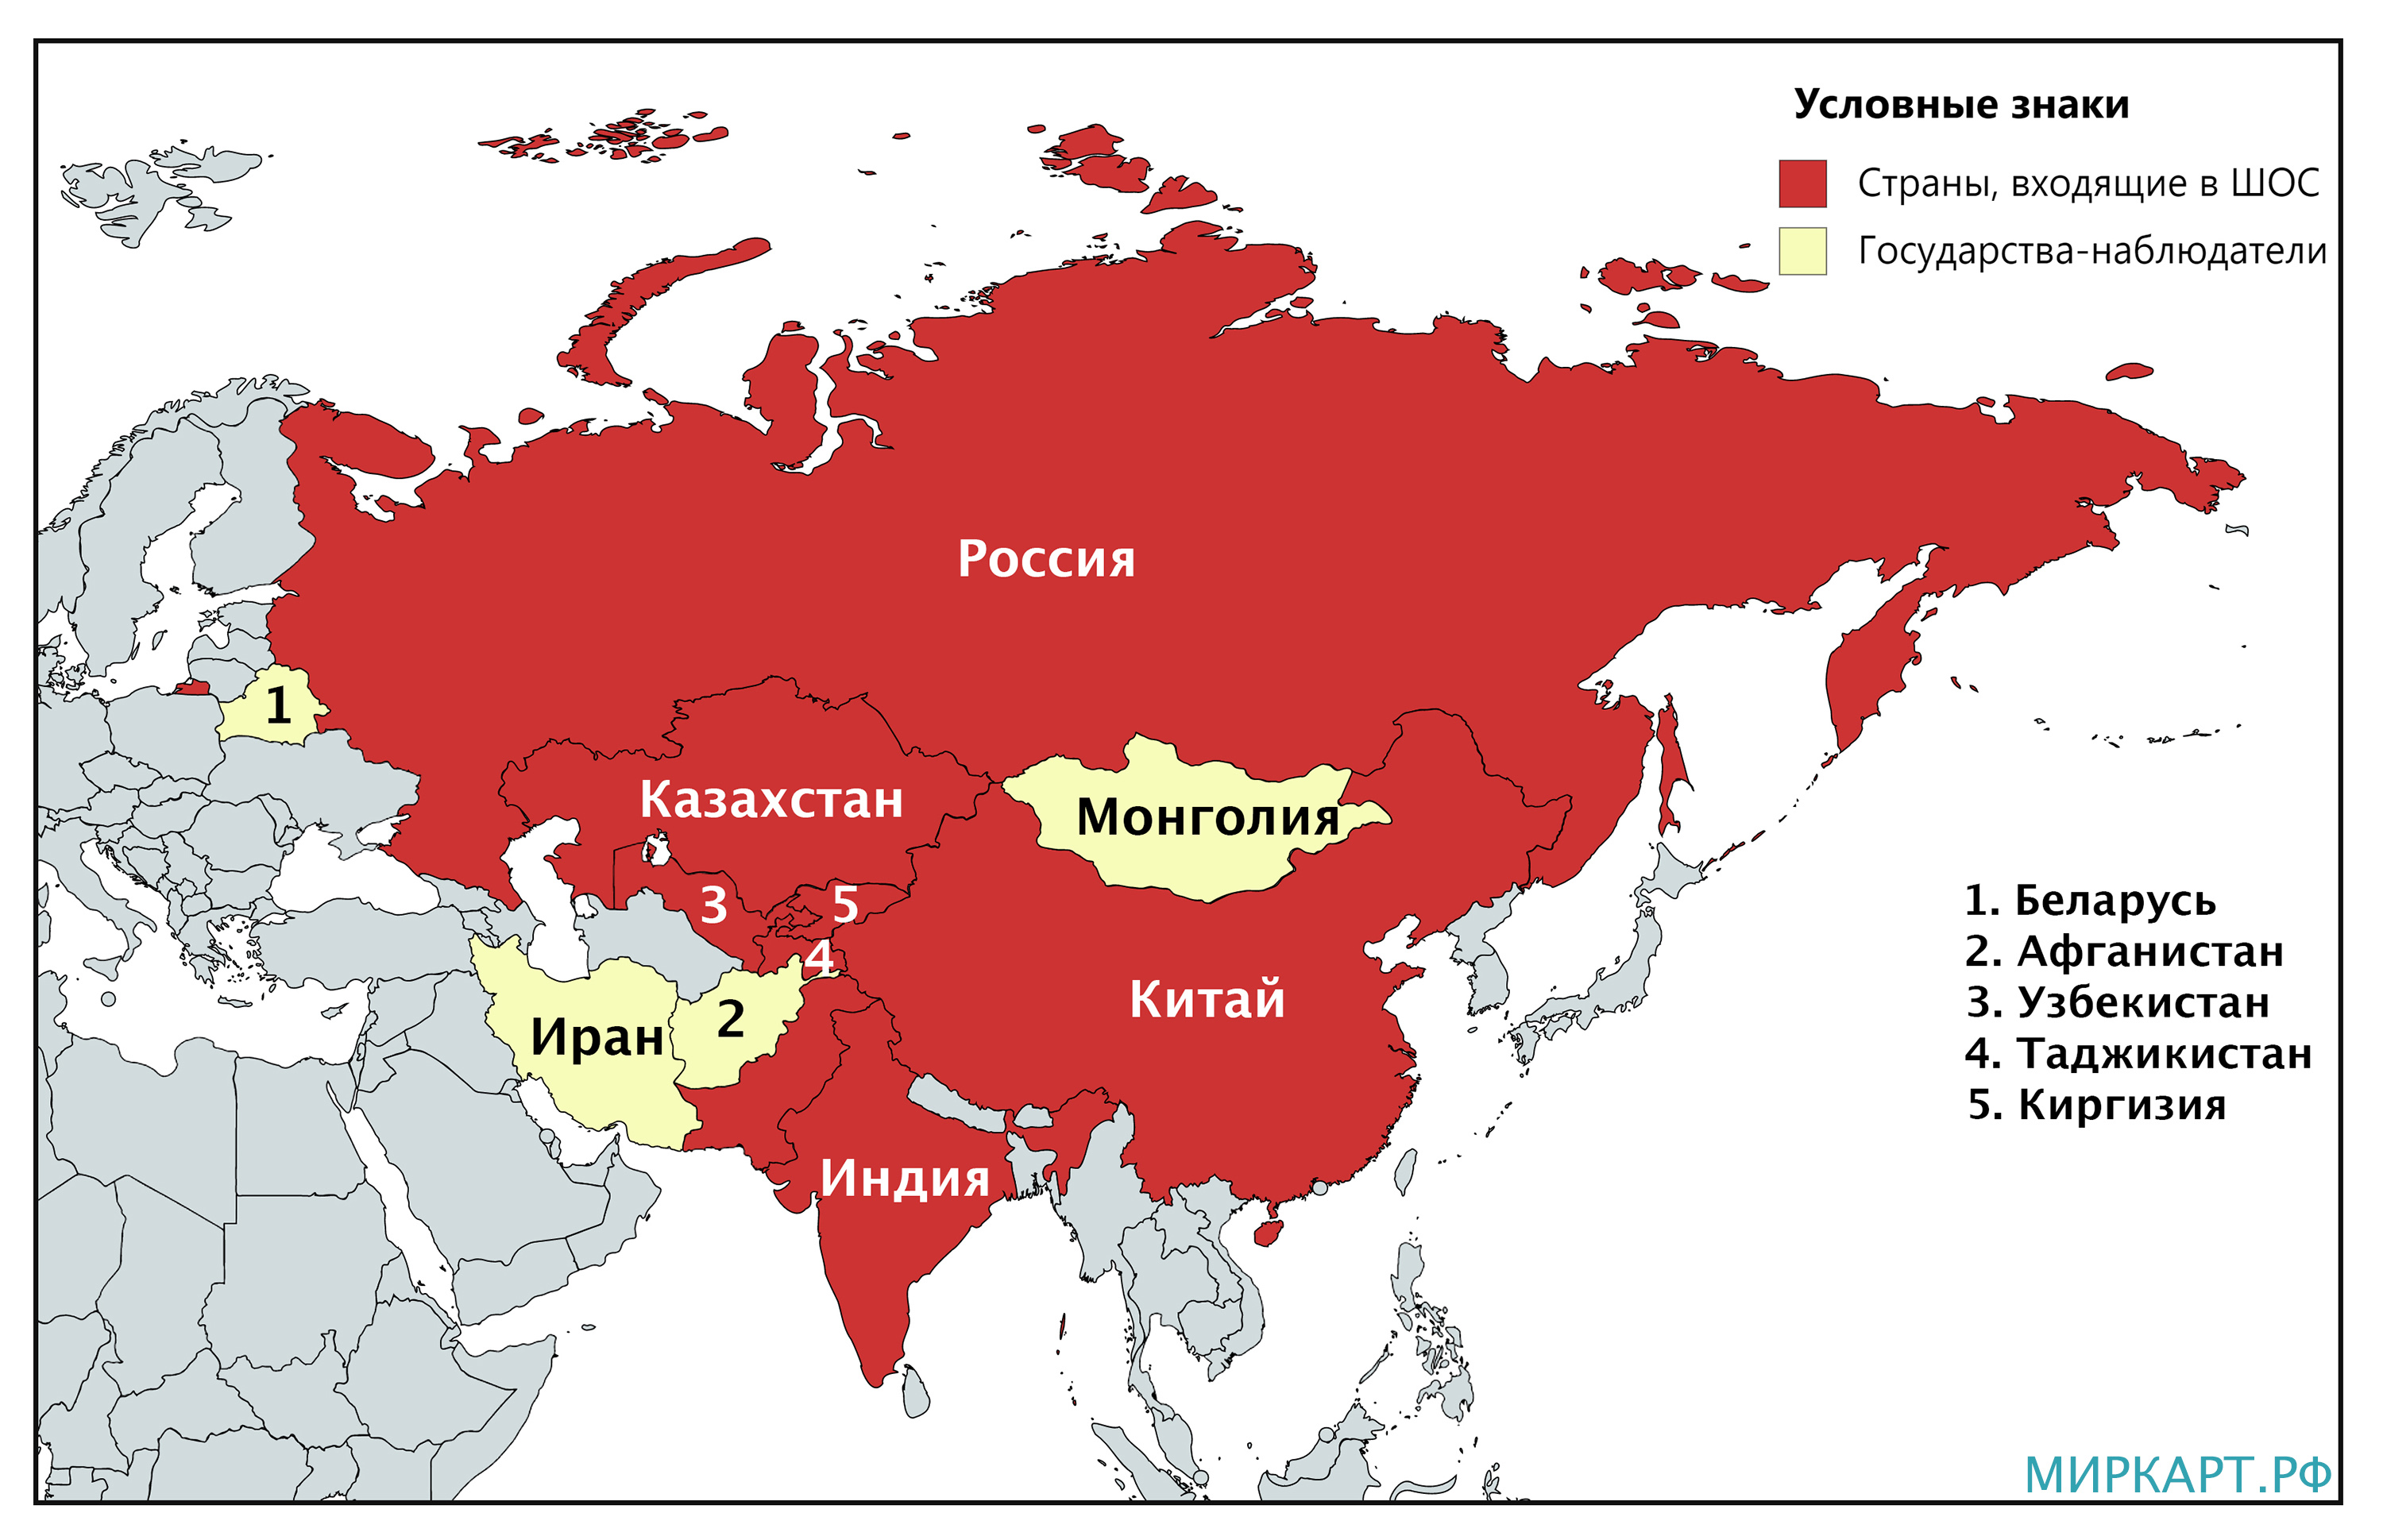 Страны члены ШОС на карте